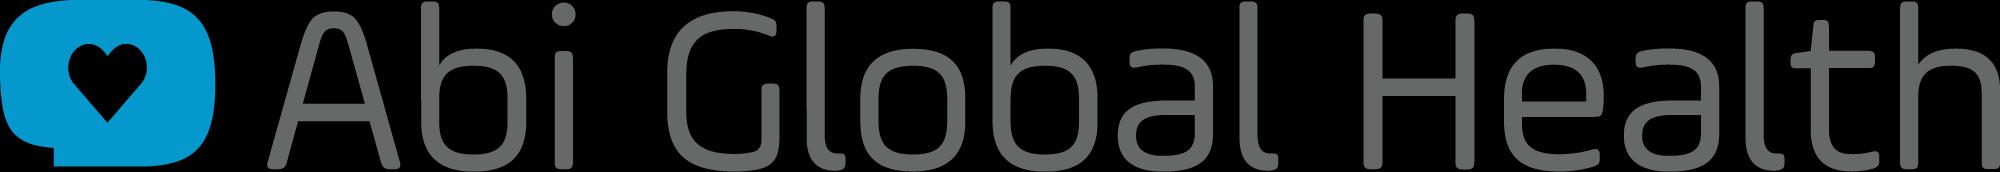 Abi Global Health_logo